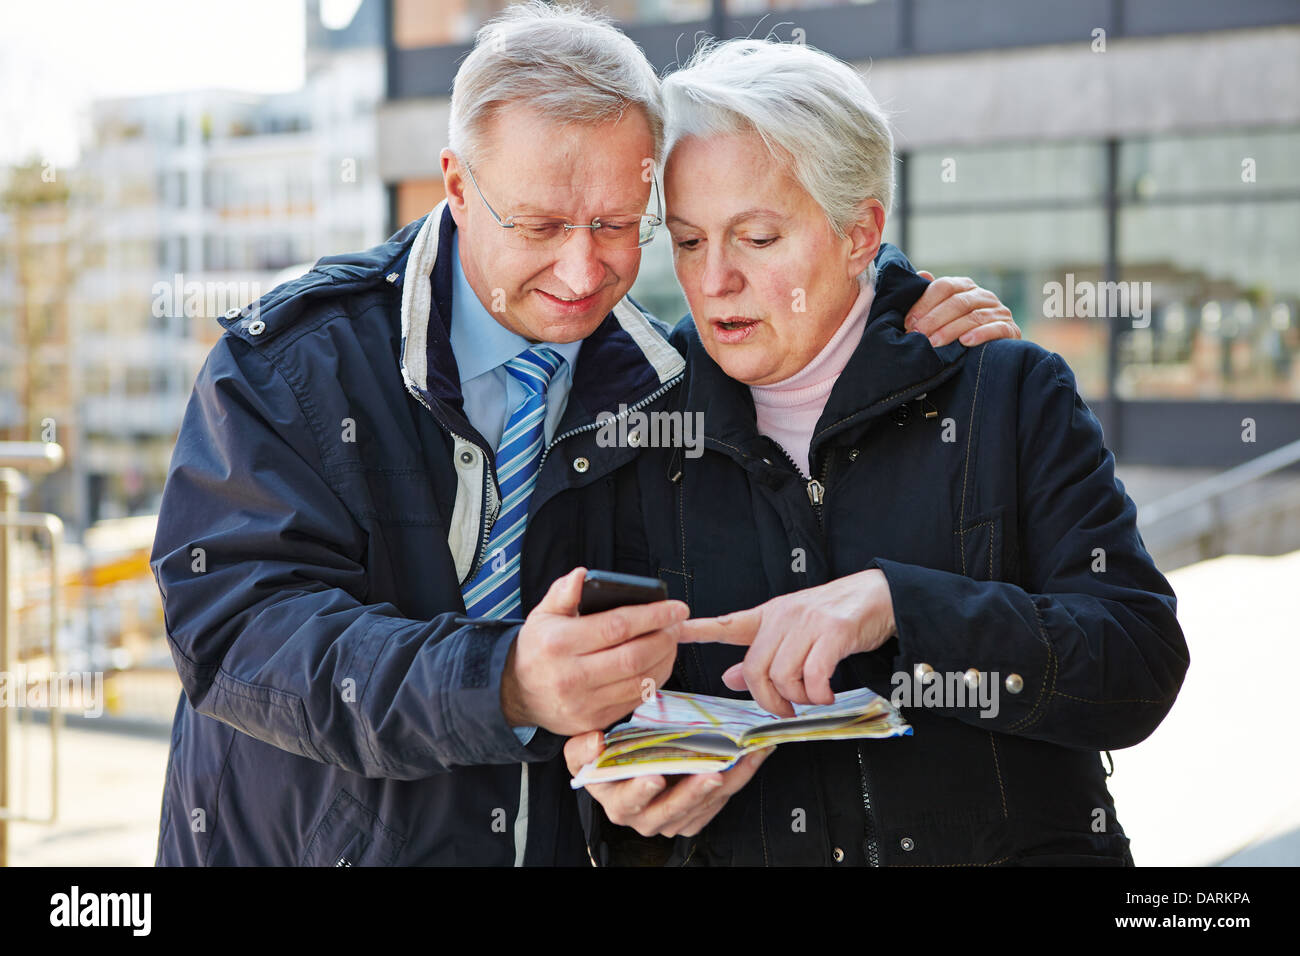 Älteres Paar als Touristen mit Karte und Smartphone in einer Stadt Stockfoto